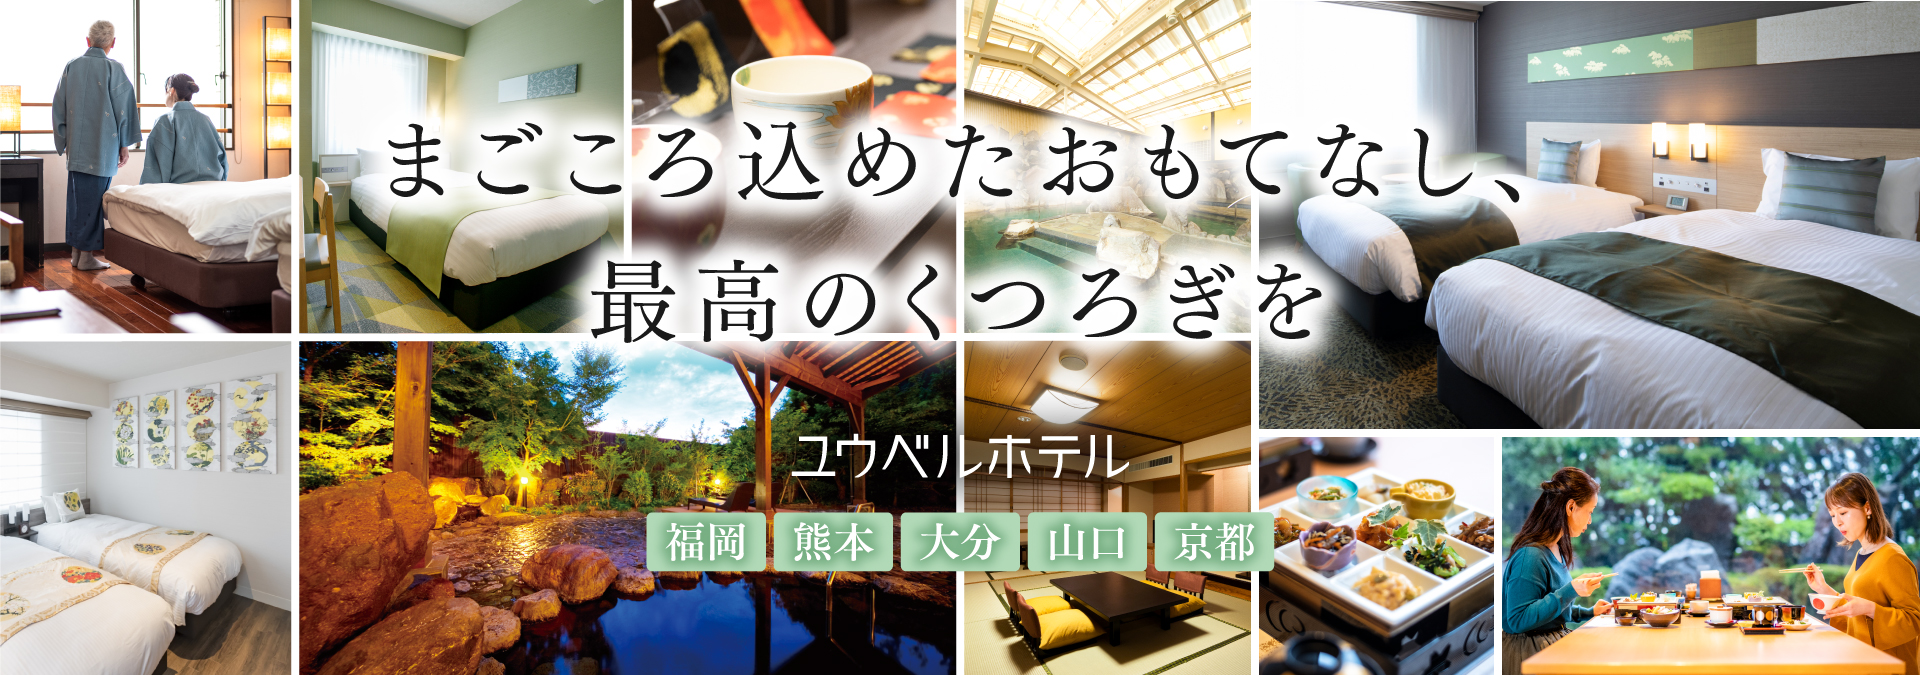 まごころ込めたおもてなし、最高のくつろぎを ユウベルホテル 福岡 熊本 大分 山口 京都